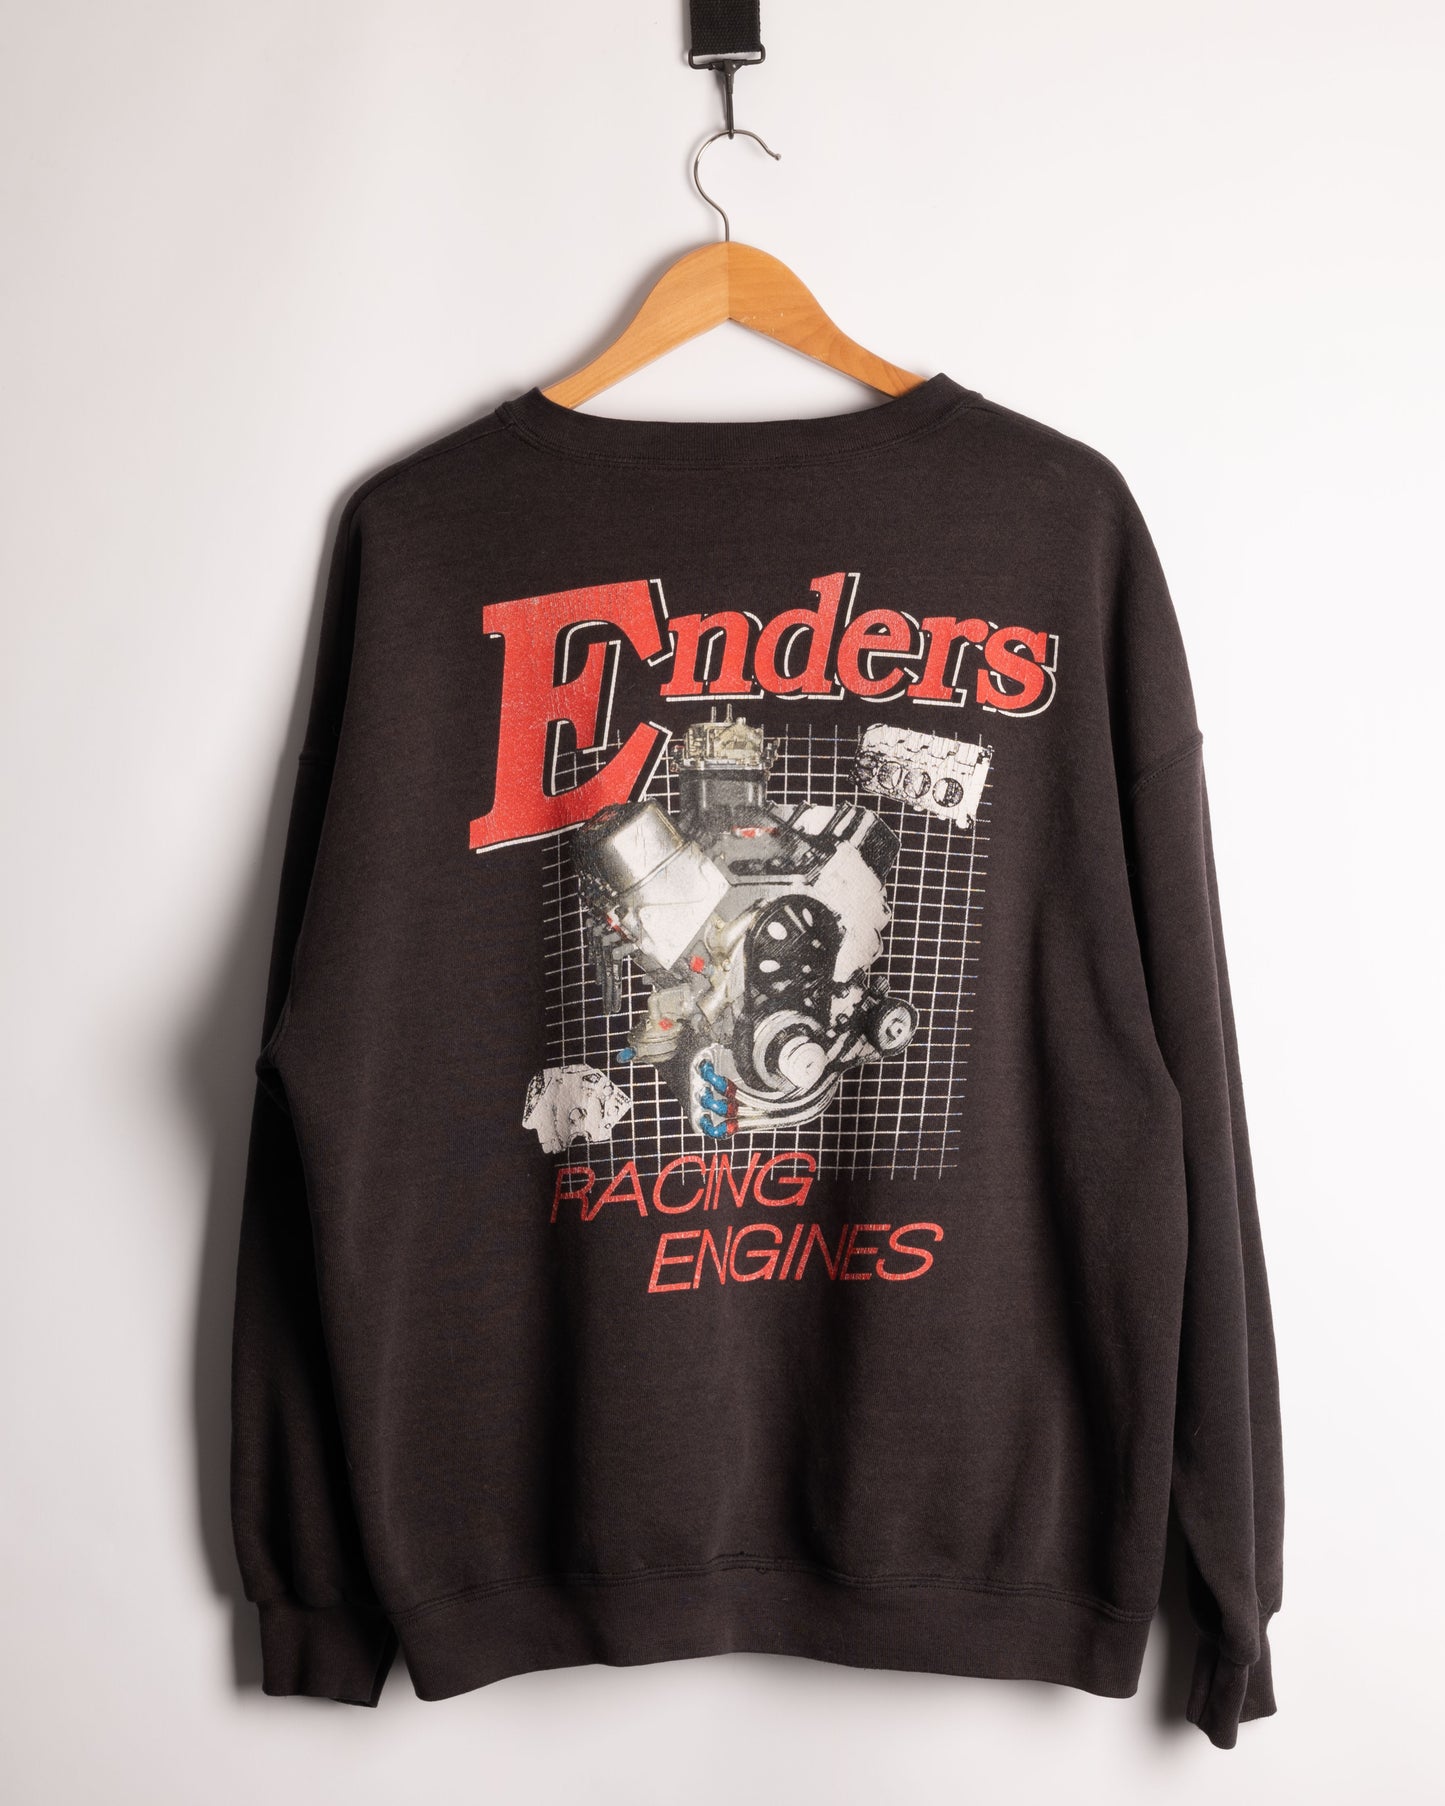 Enders racing engines sweatshirt vintage 80s 90s cars moto